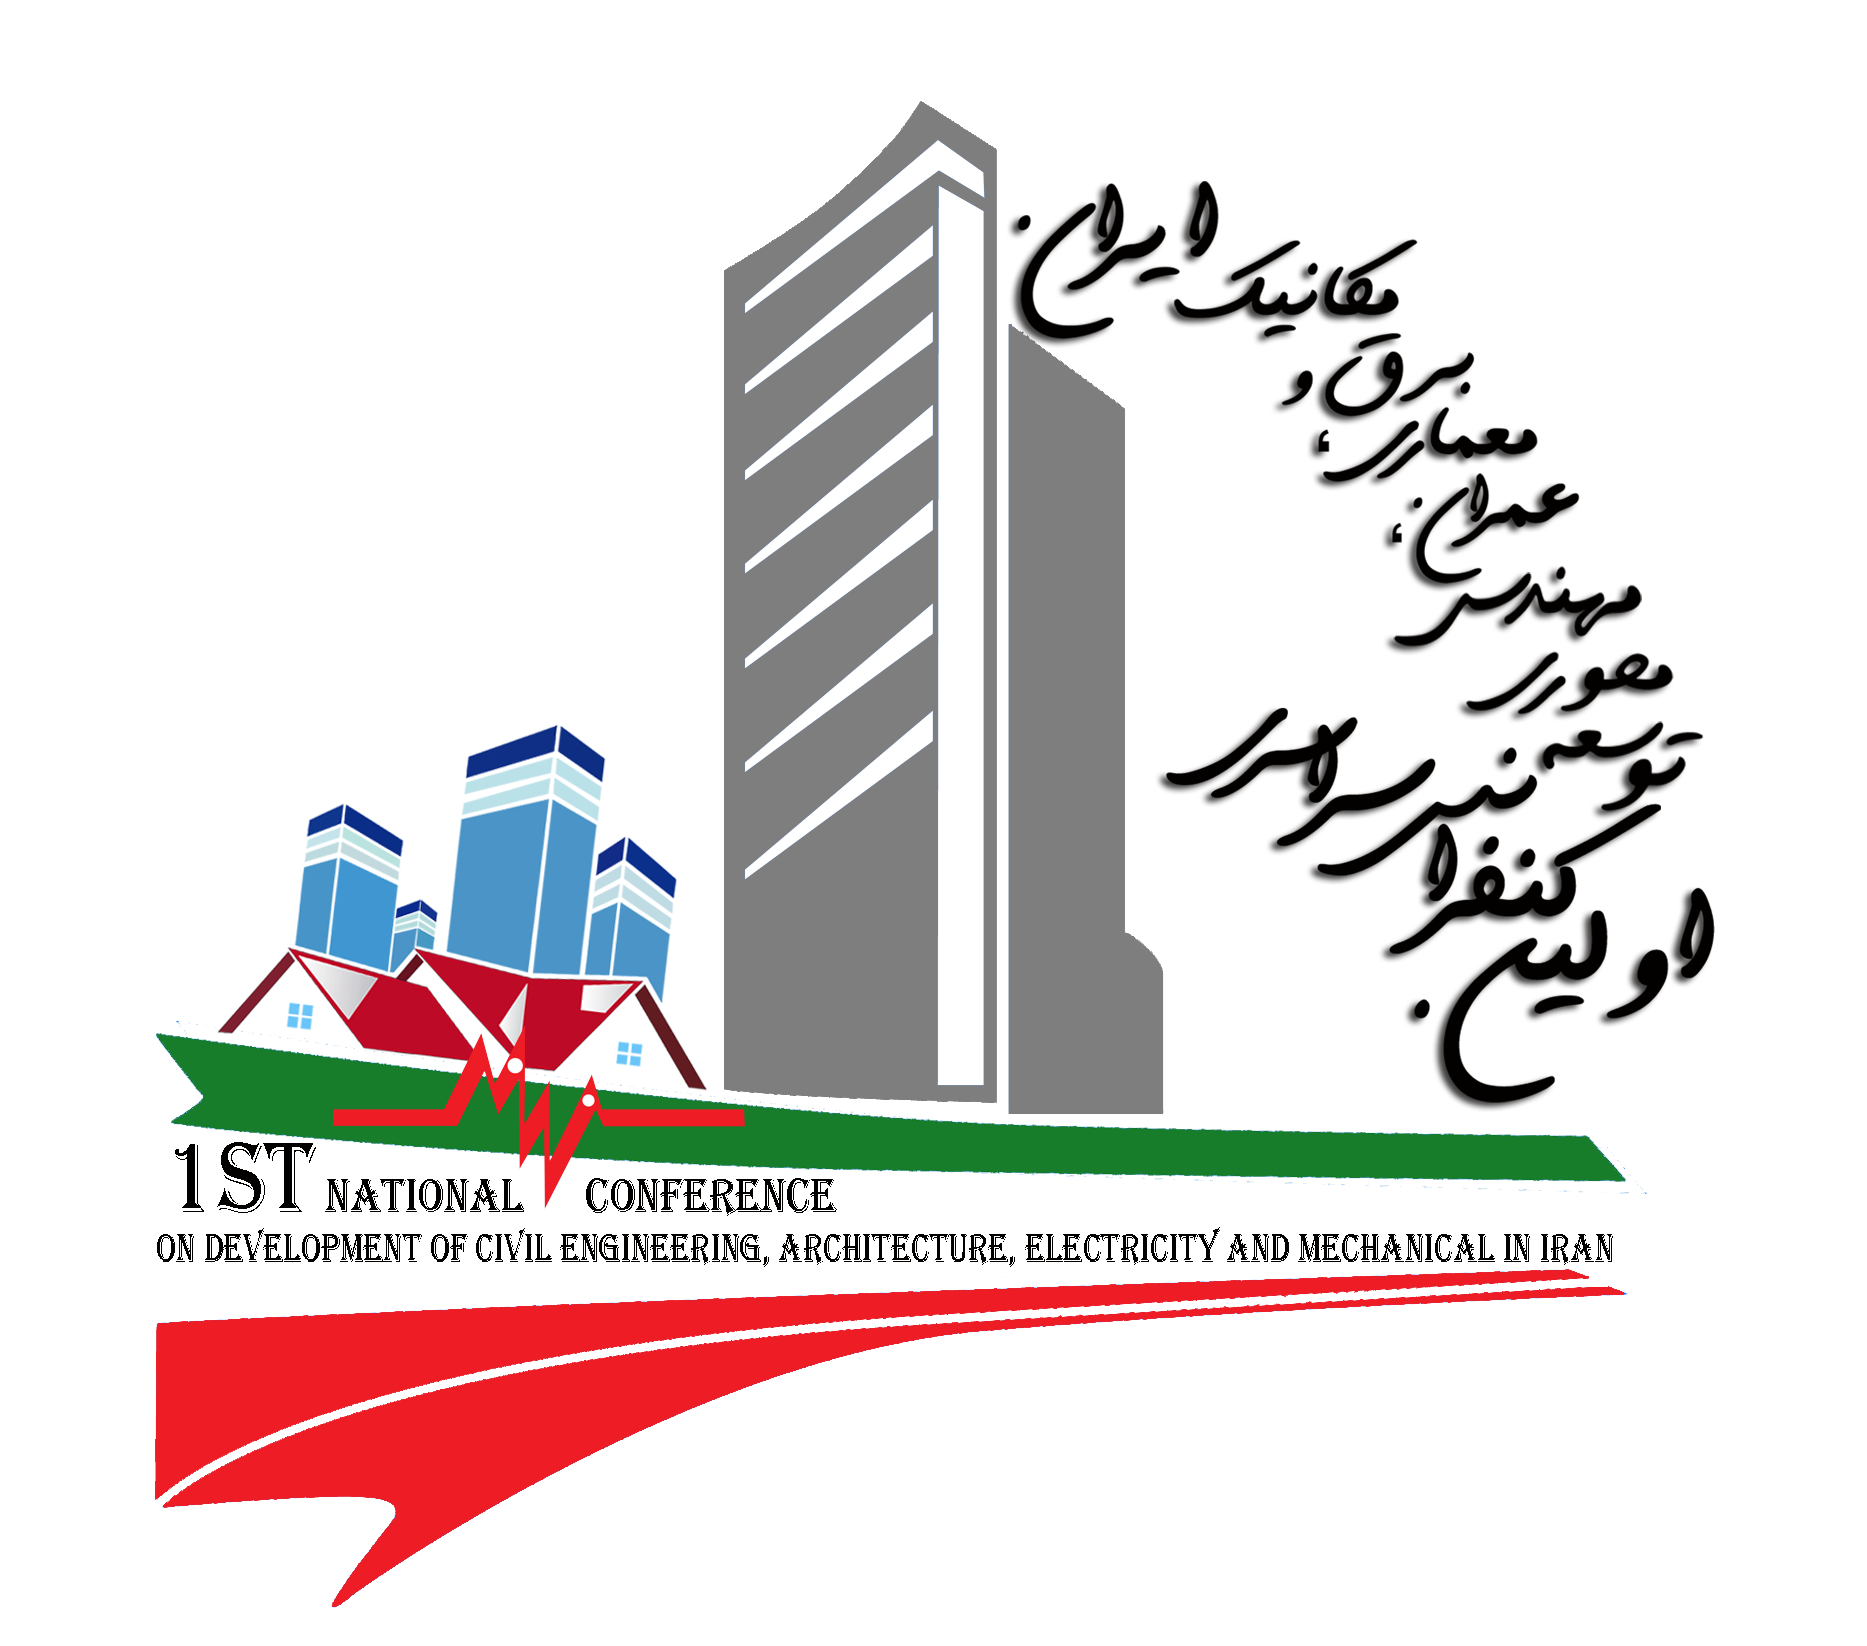 اولین کنفرانس سراسری توسعه محوری مهندسی عمران،معماری،برق و مکانیک ایران